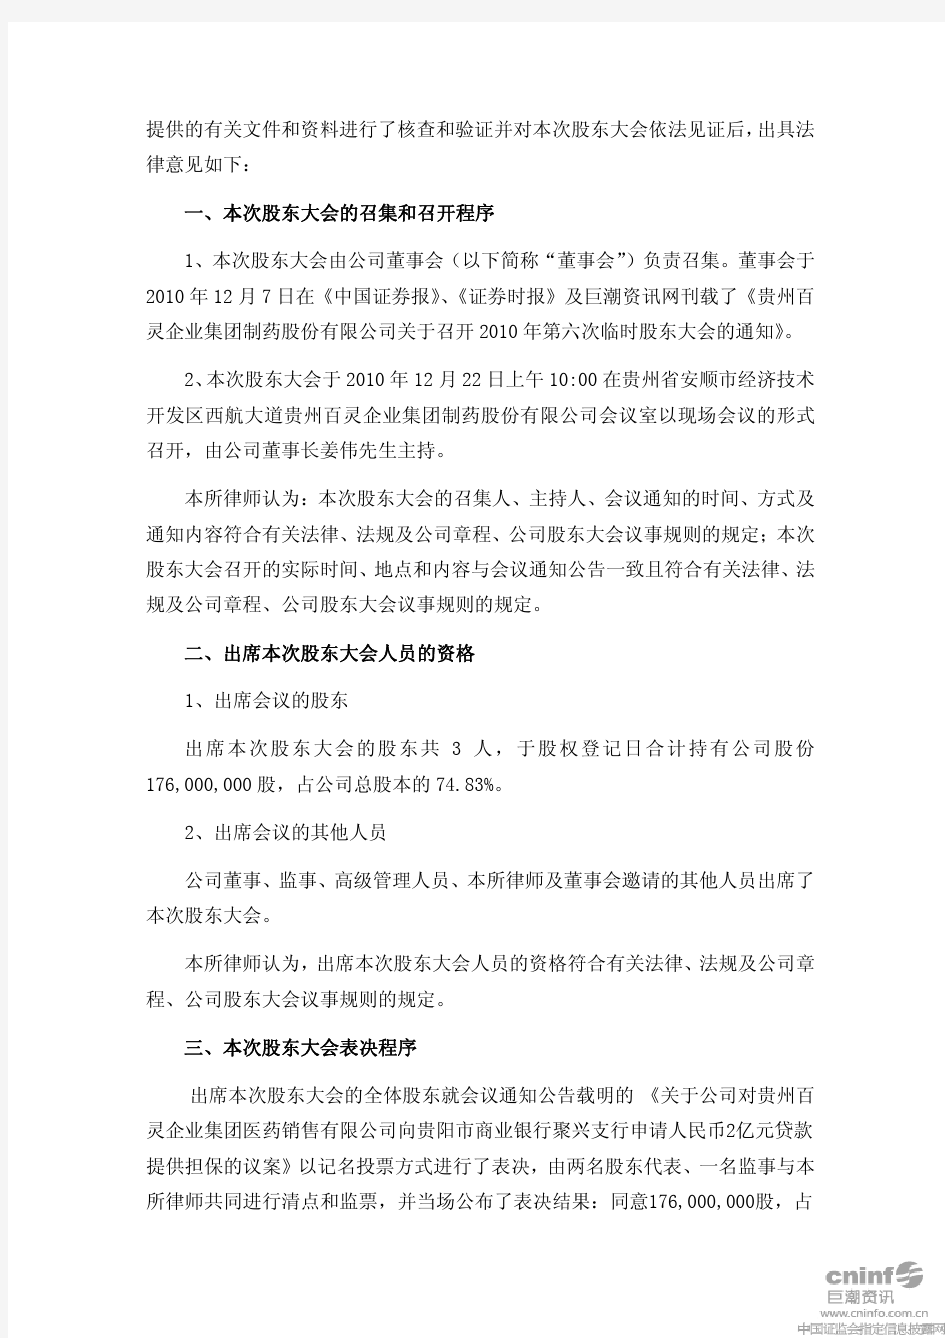 贵州百灵：2010年第六次临时股东大会的法律意见书 2010-12-23